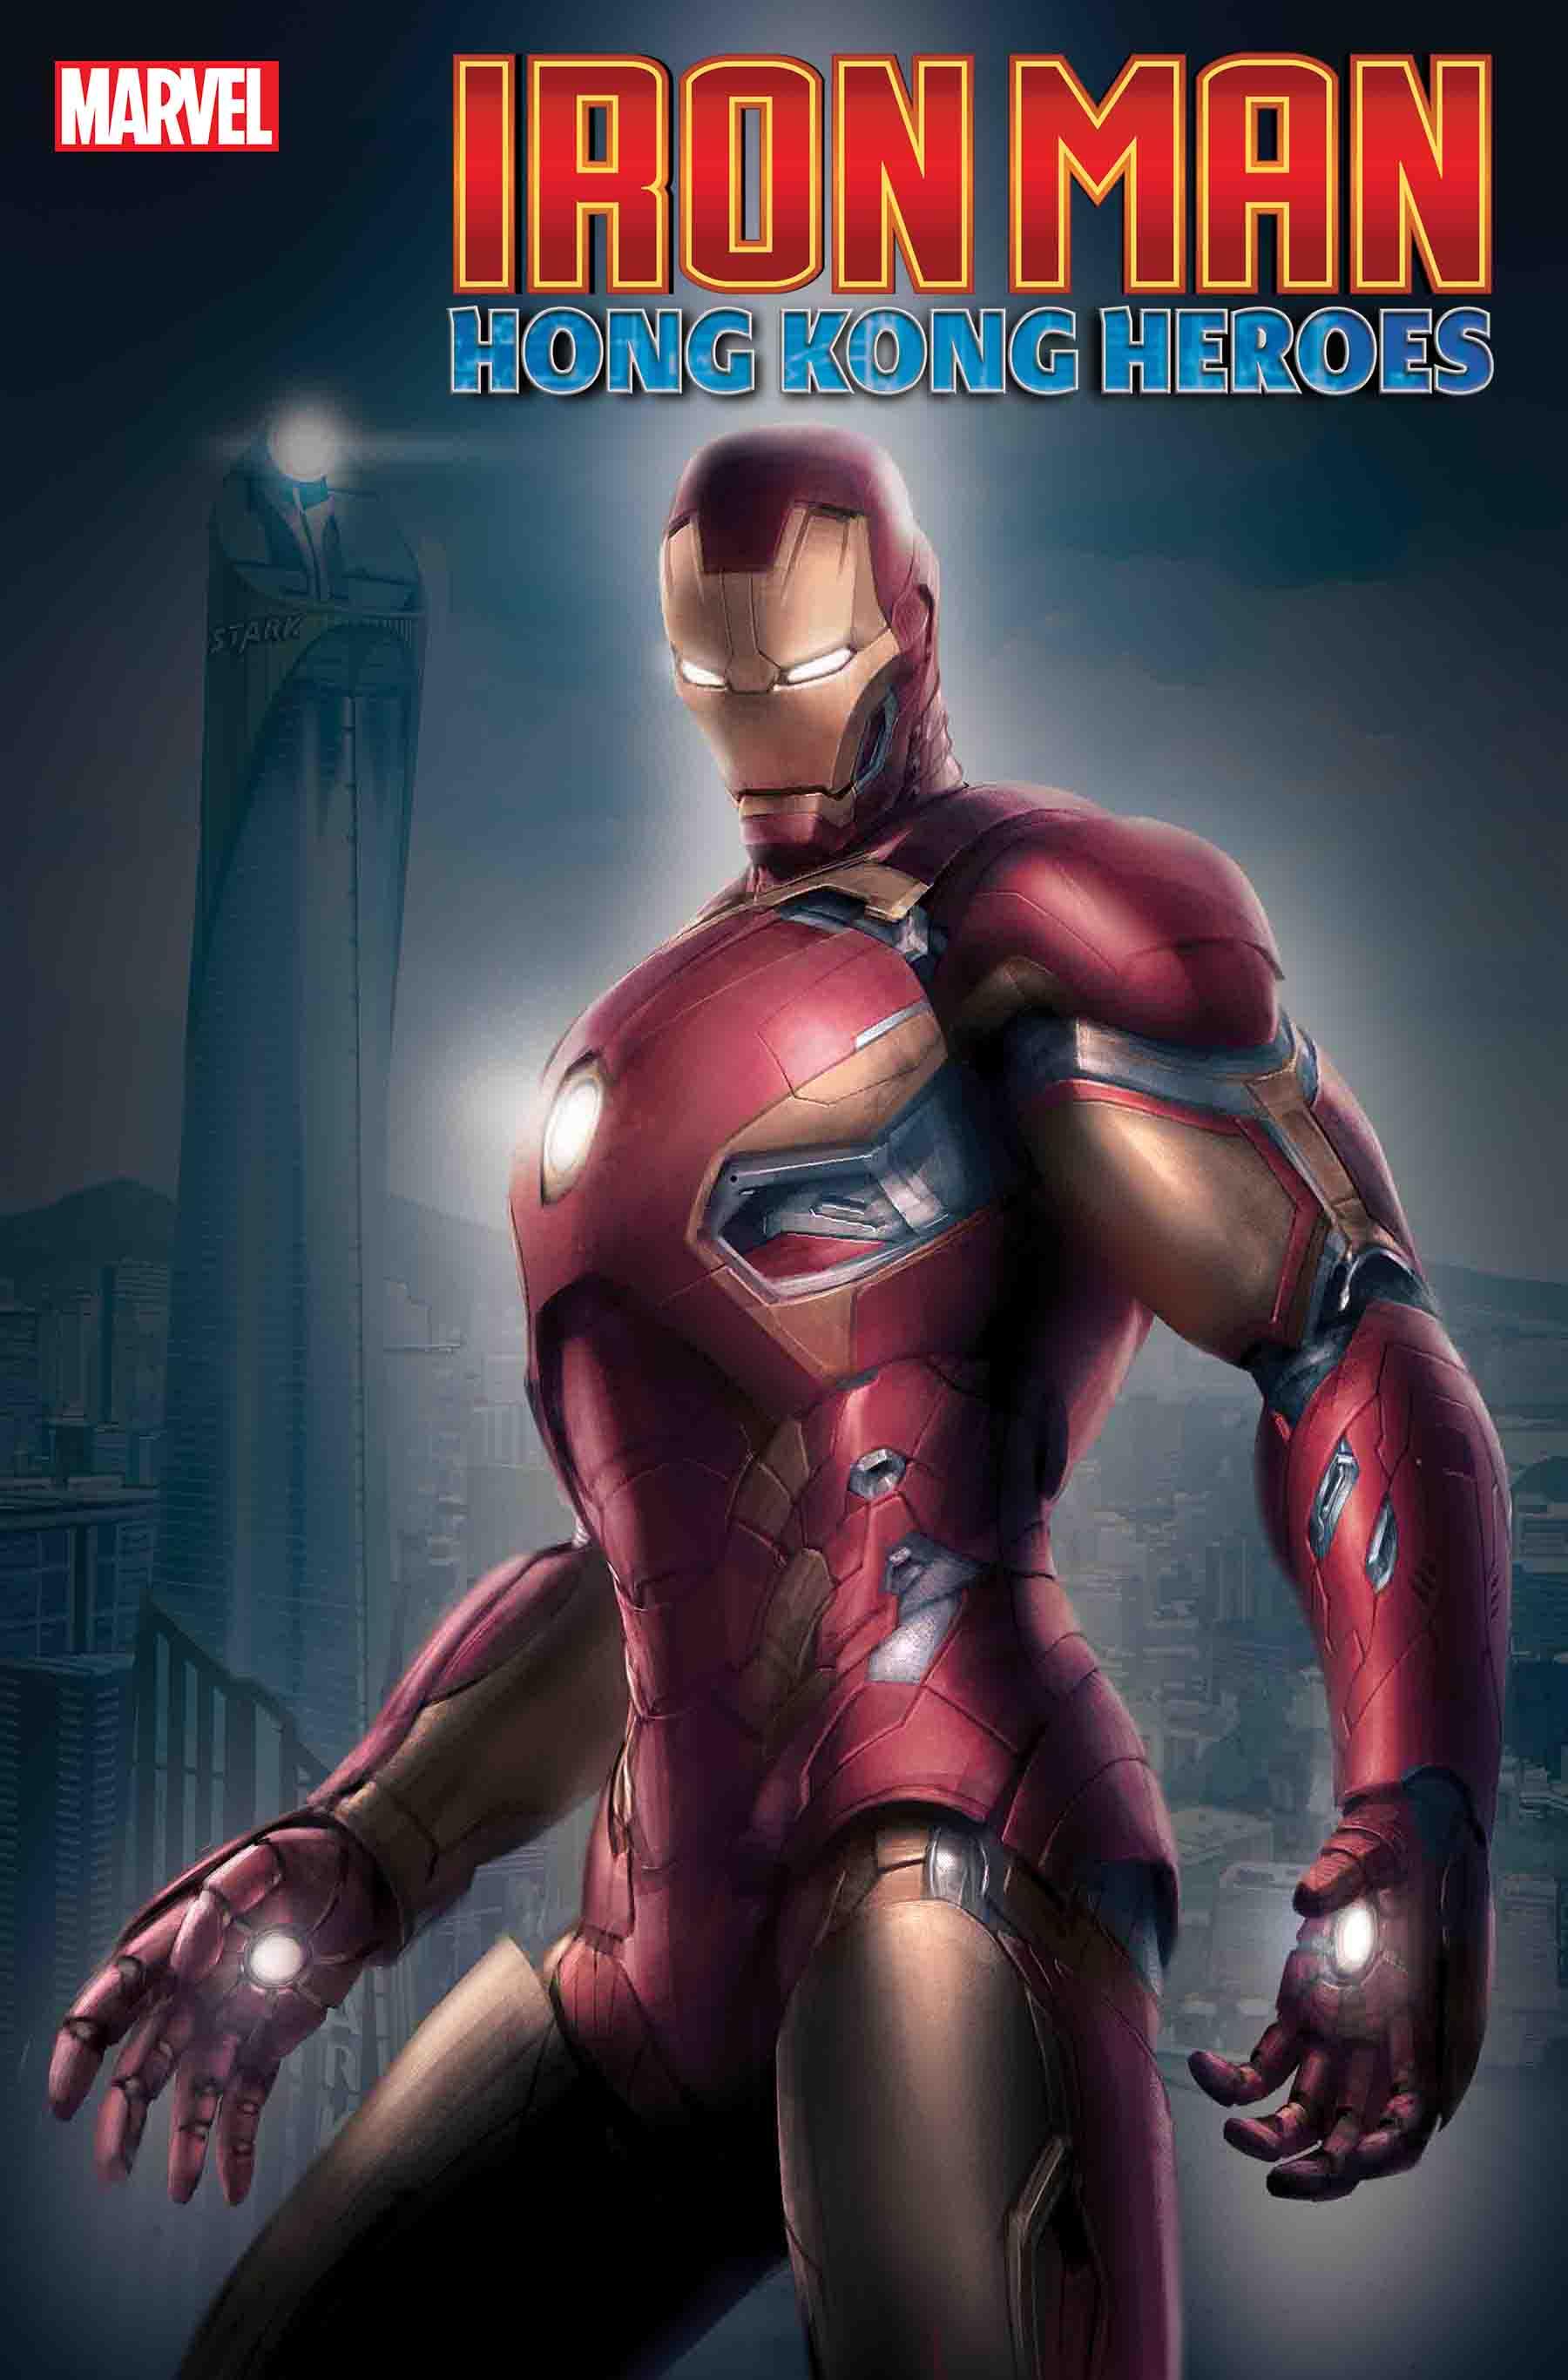 Iron Man: Hong Kong Heroes Vol. 1 #1